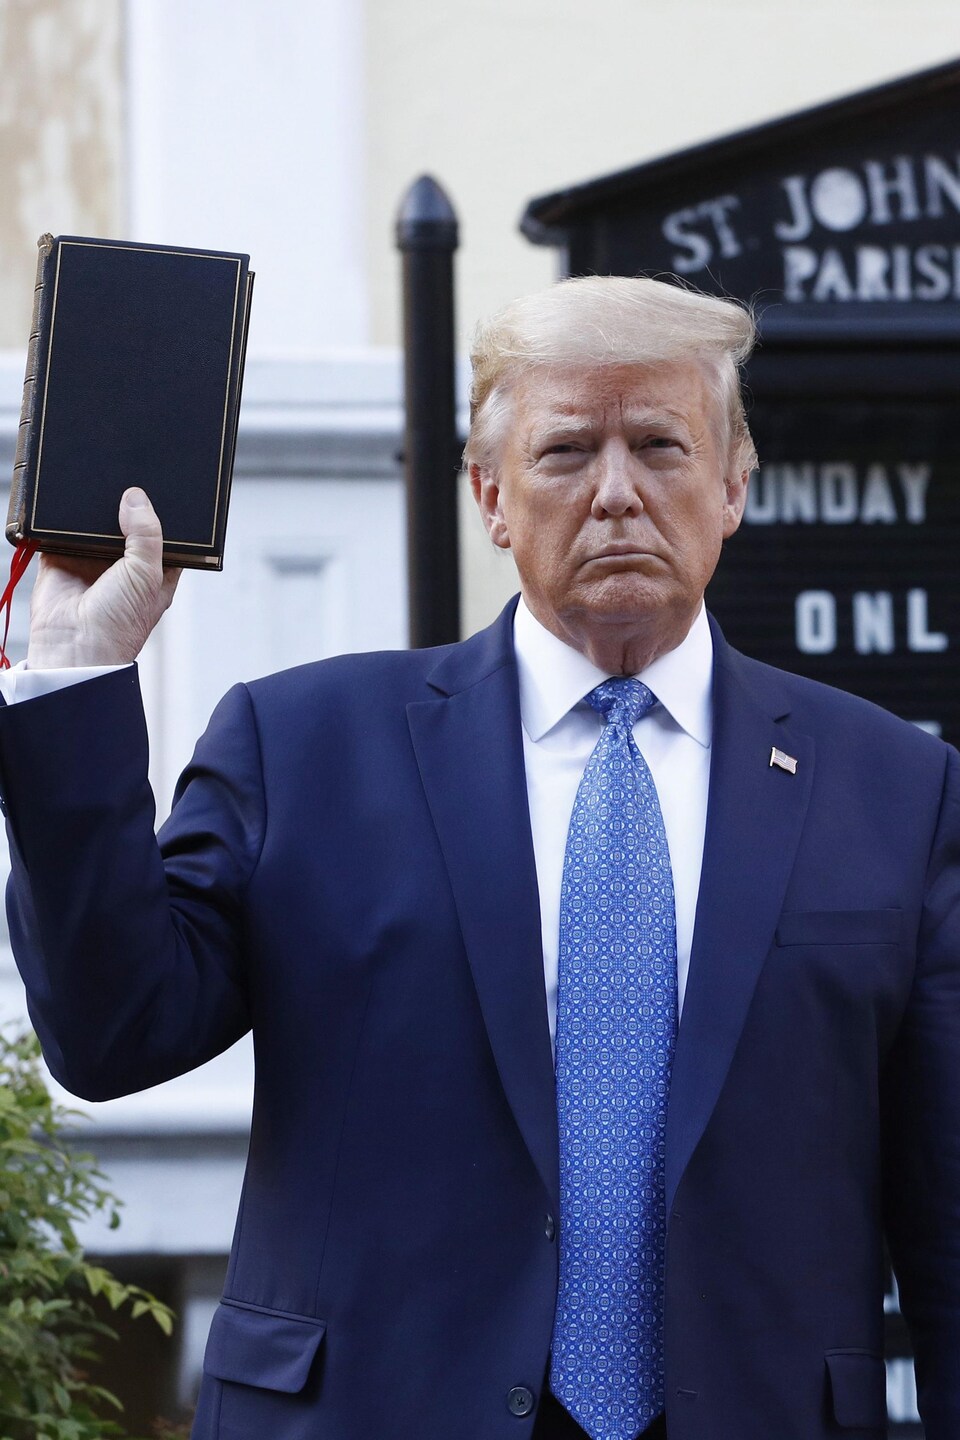 Donald Trump, brandissant une bible devant l'église St. John's.